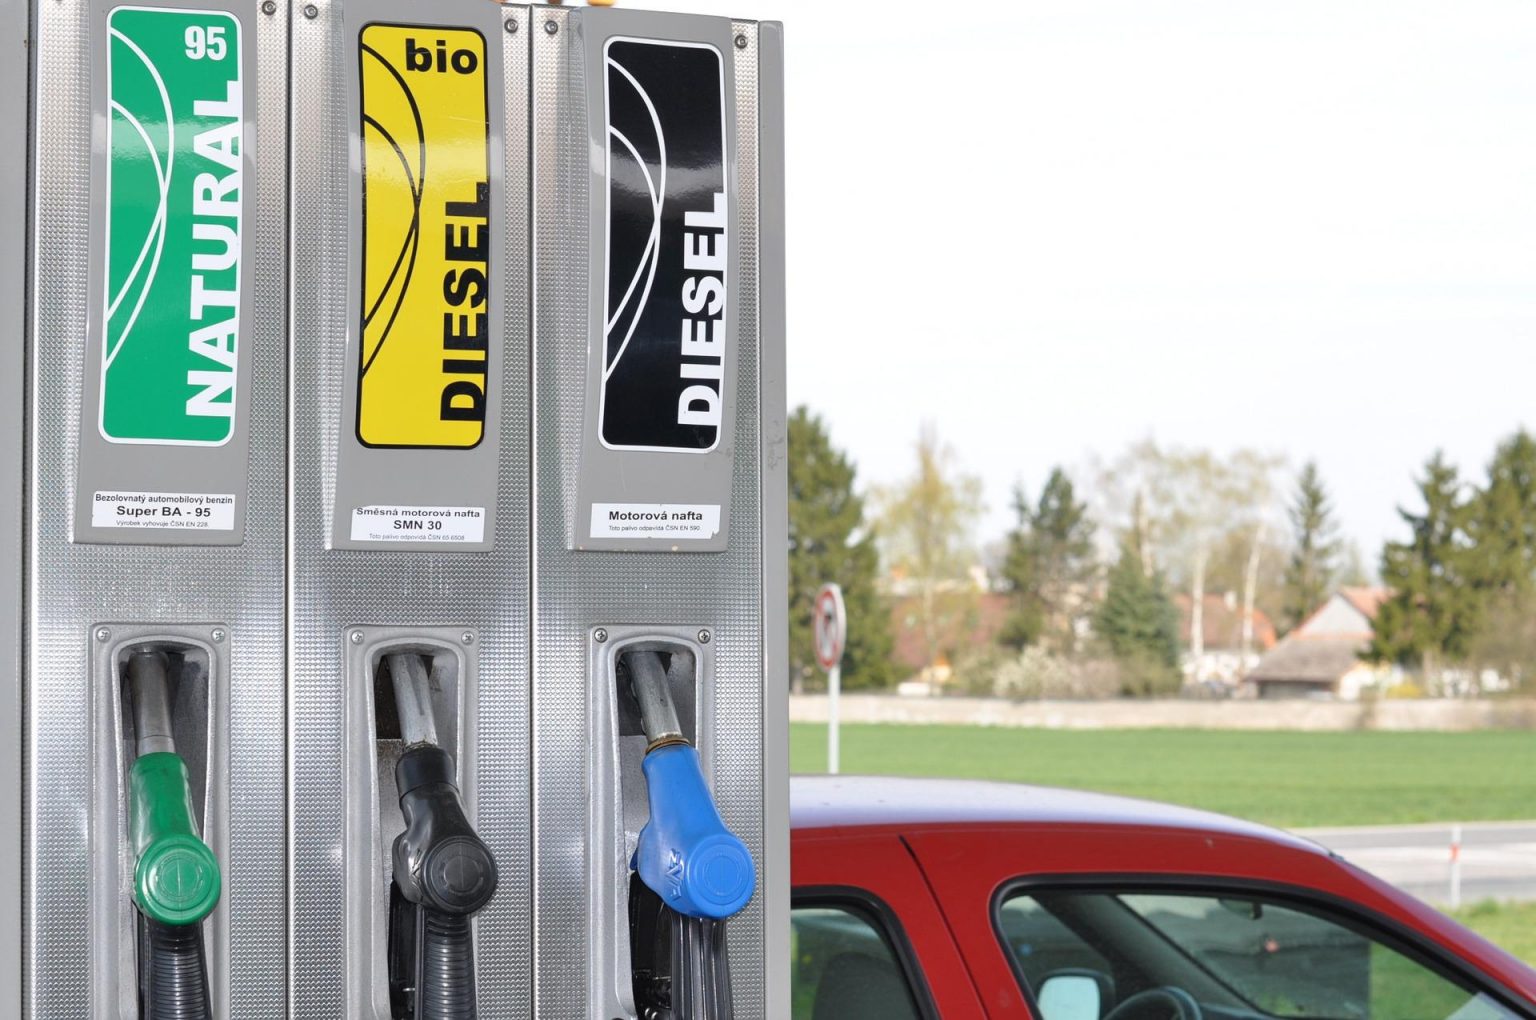 Aumento no percentual de ganho de dados de biodiesel para ser retomado;  entenda